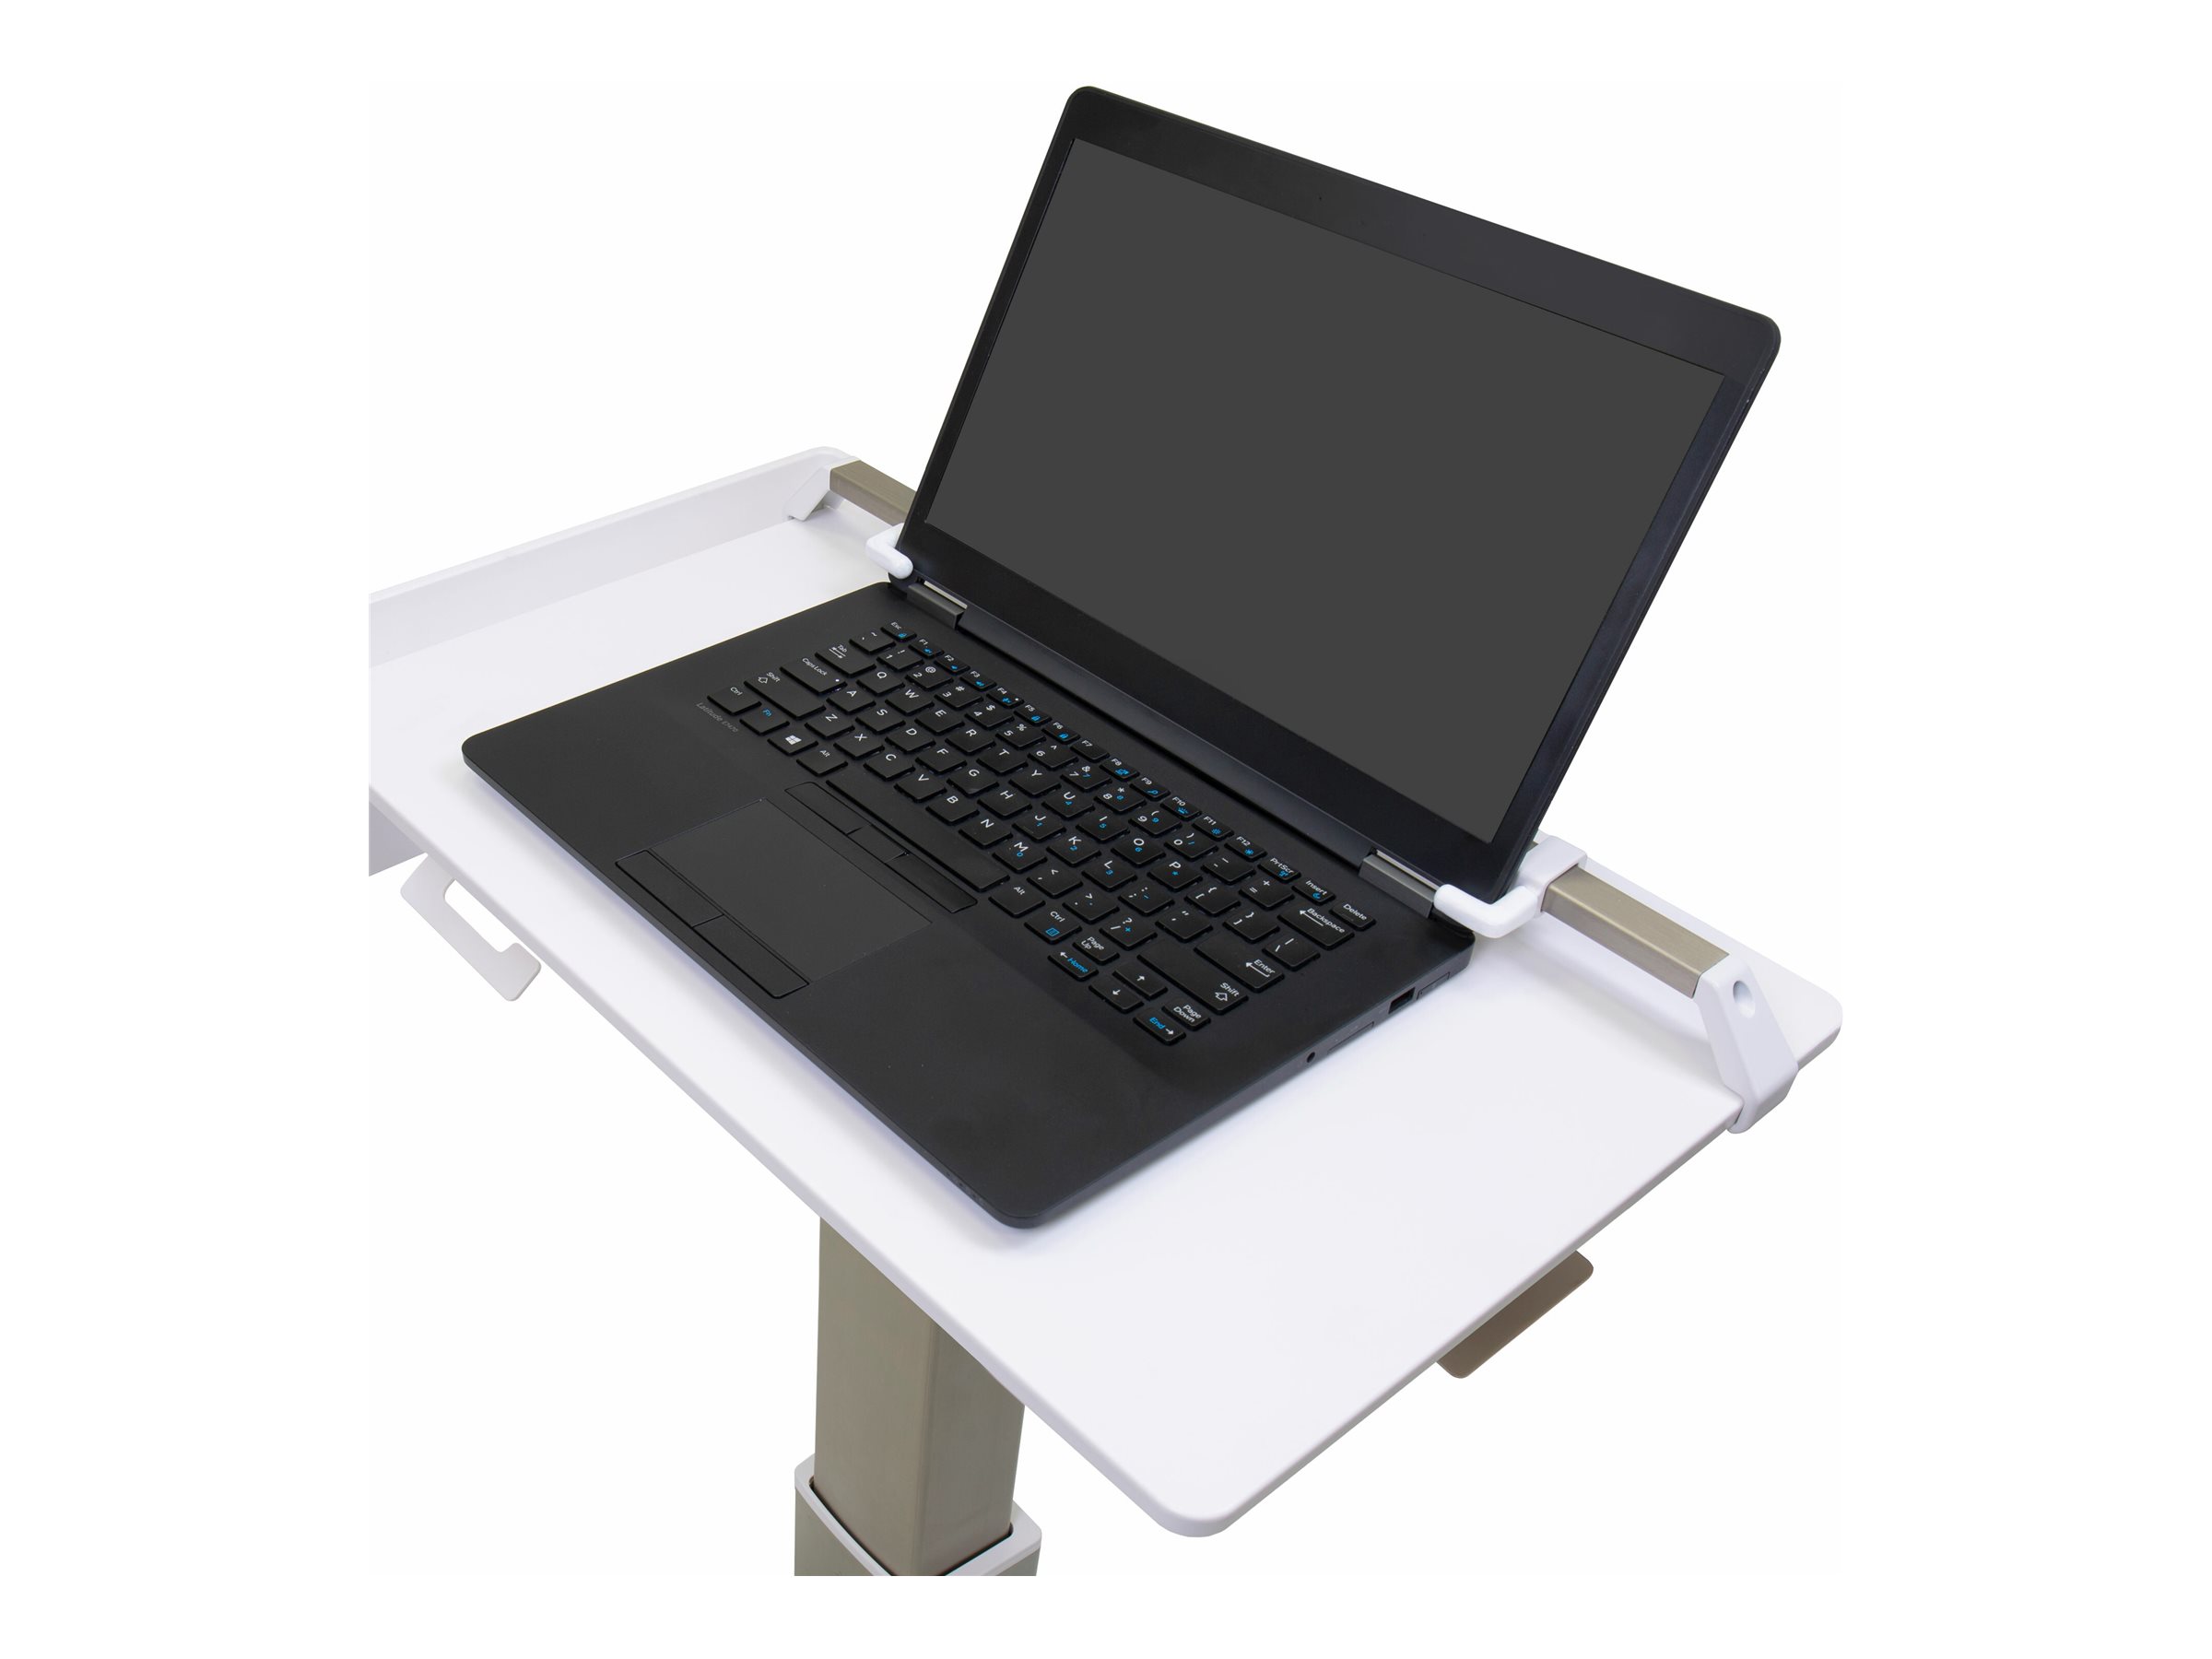 Ergotron CareFit - Chariot - Mince - pour ordinateur portable - aluminium, acier zingué, plastique haute qualité - blanc, gris chaleureux - Taille d'écran : jusqu'à 17,3 pouces - C50-1100-0 - Accessoires pour ordinateur portable et tablette